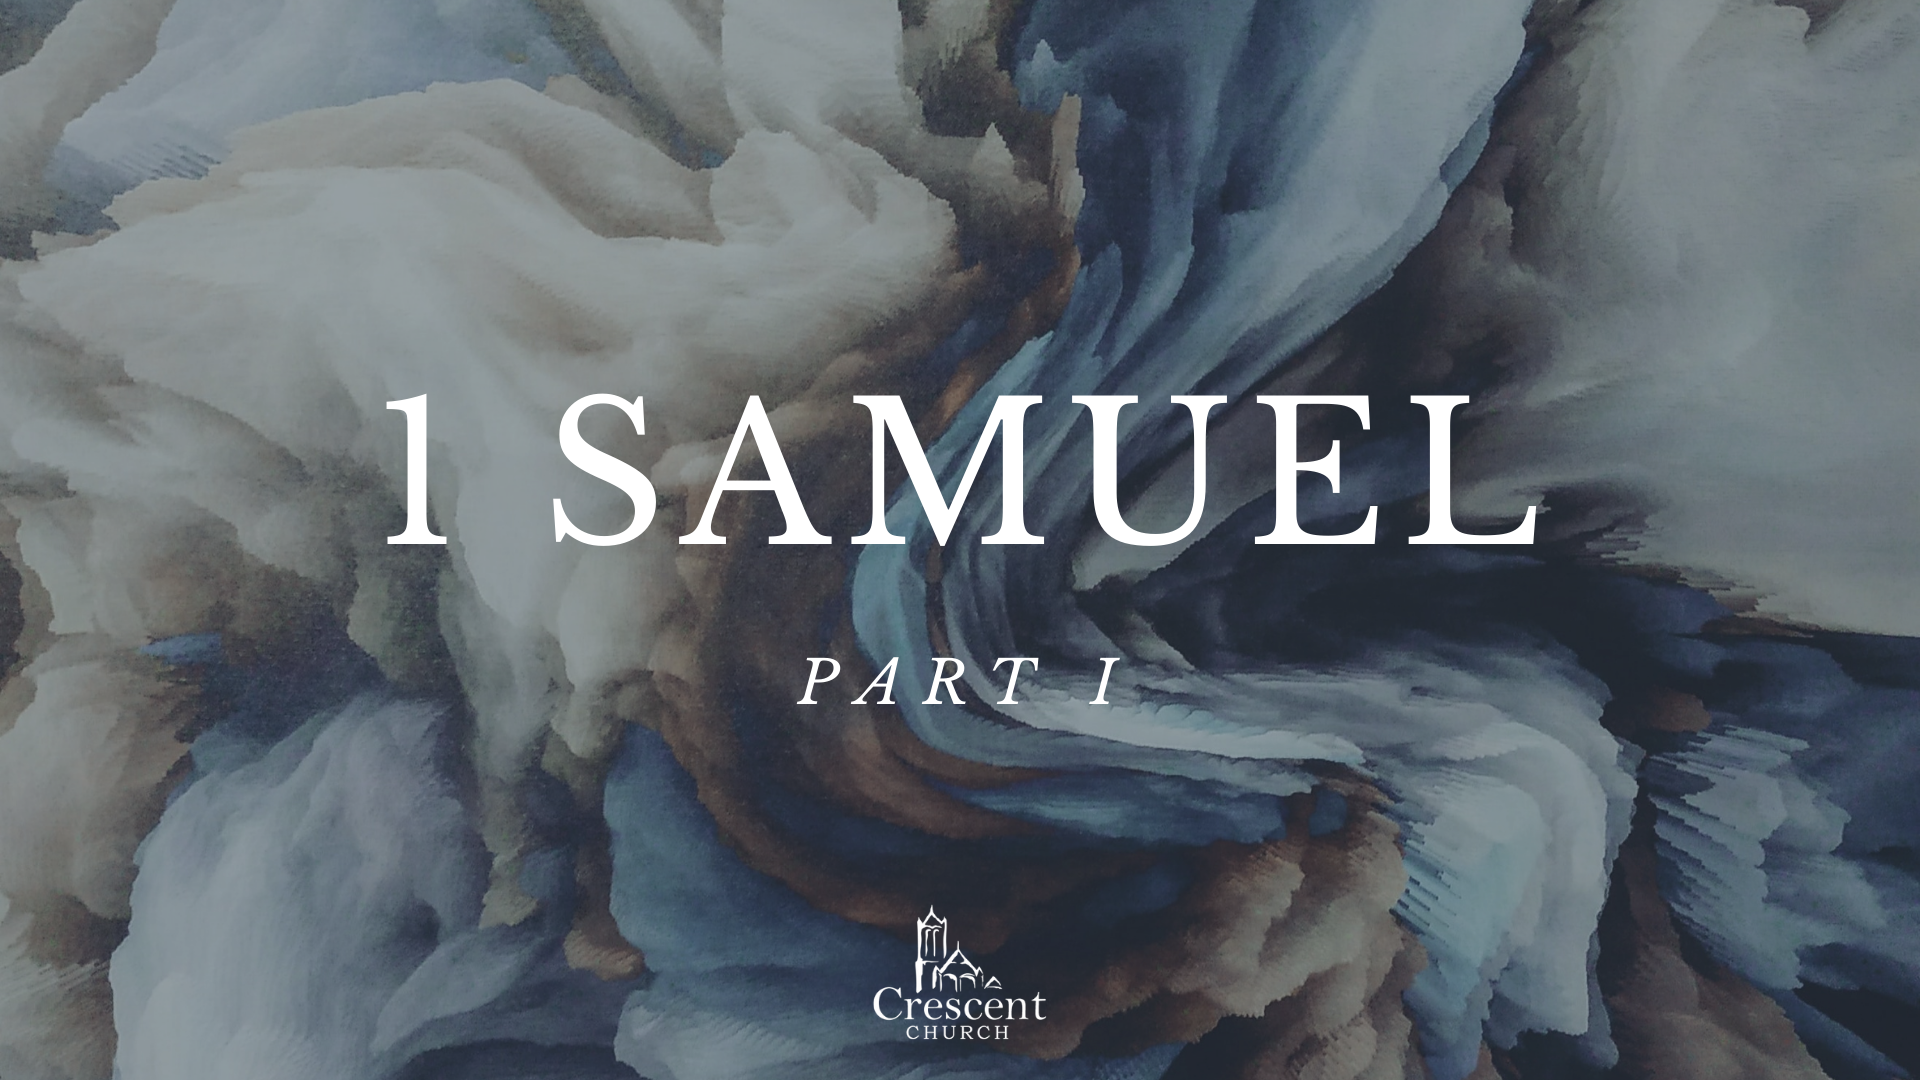 Samuel's Farewell